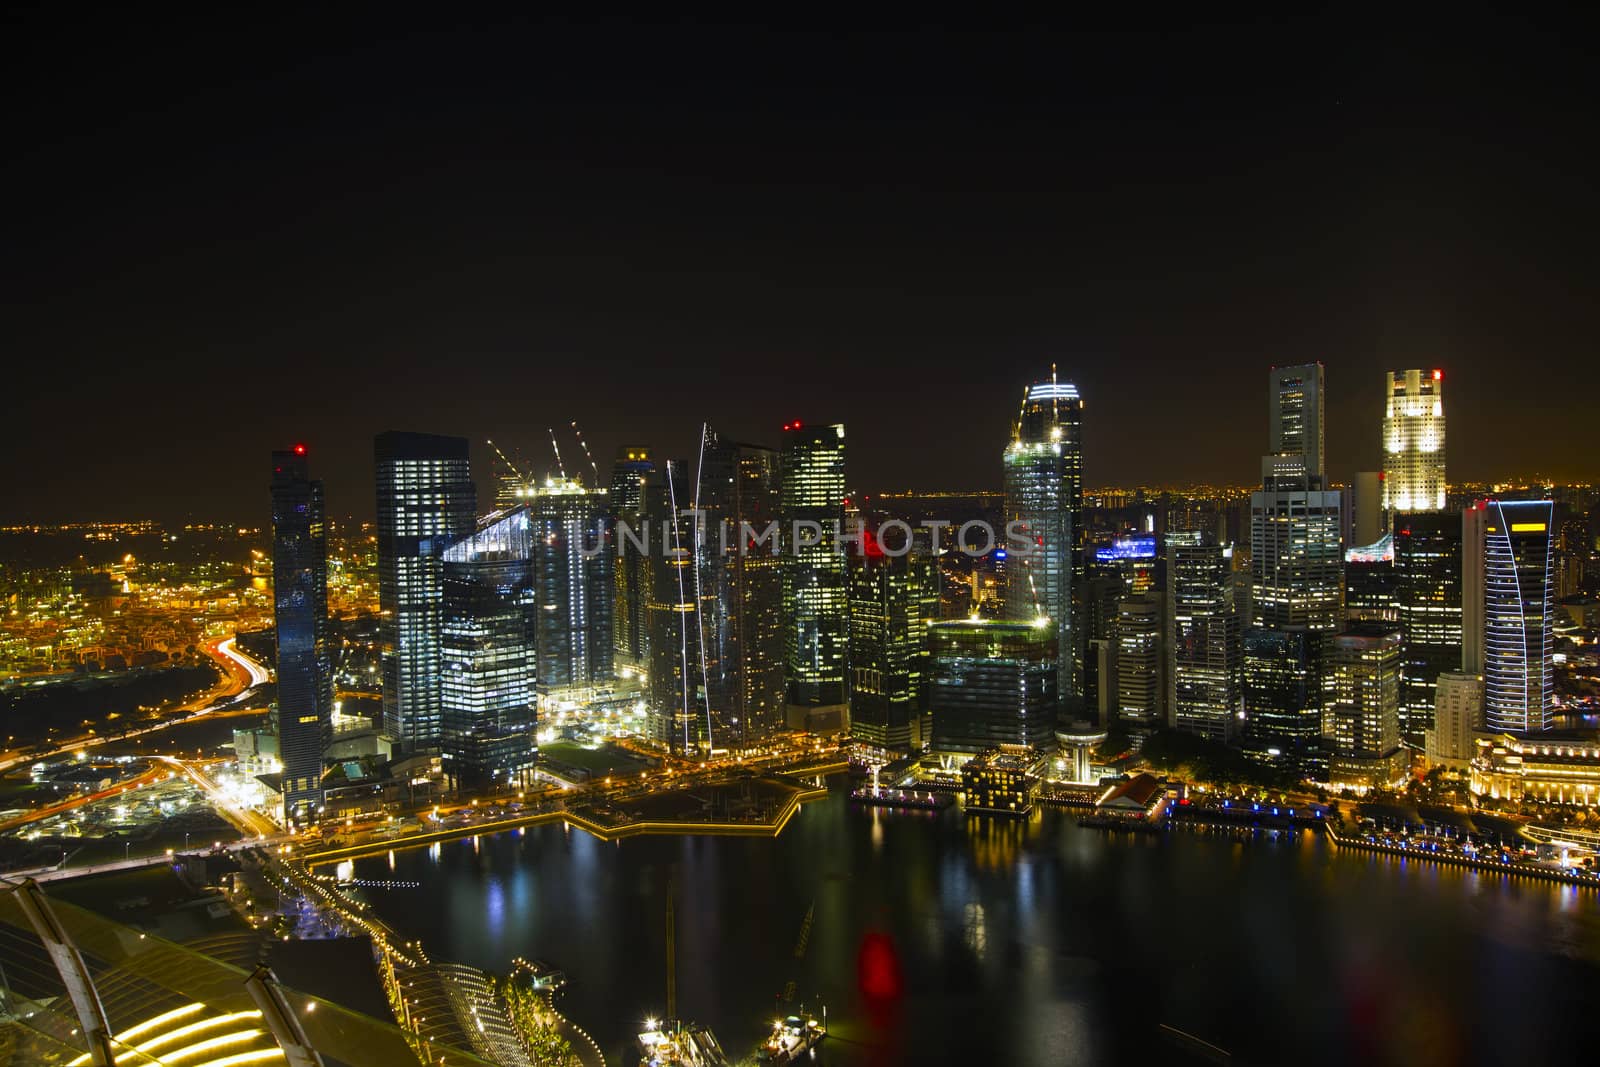 Singapore City Skyline at Night by Davidgn